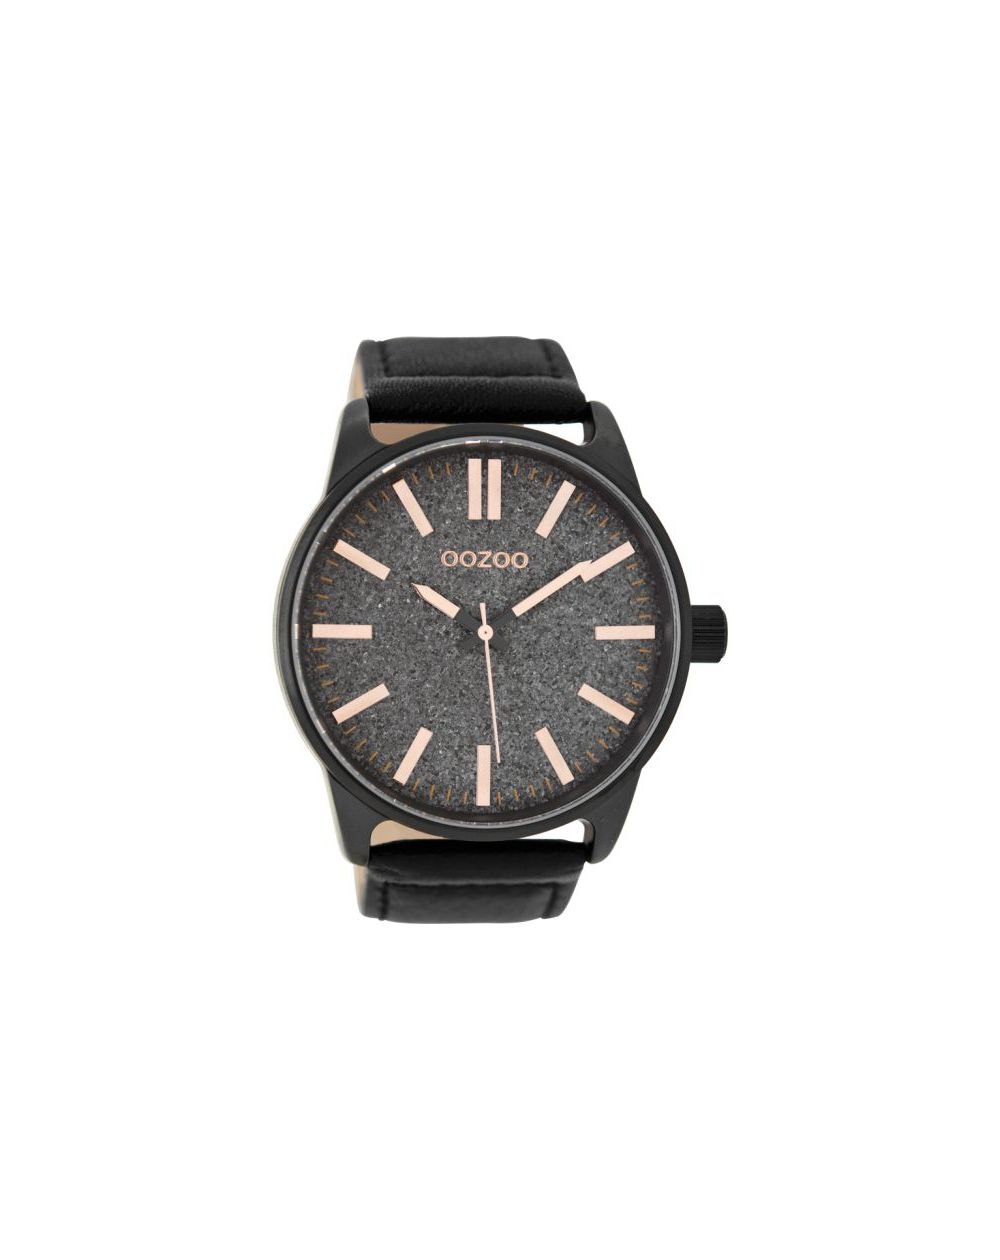 Oozoo montre/watch/horloge C9063